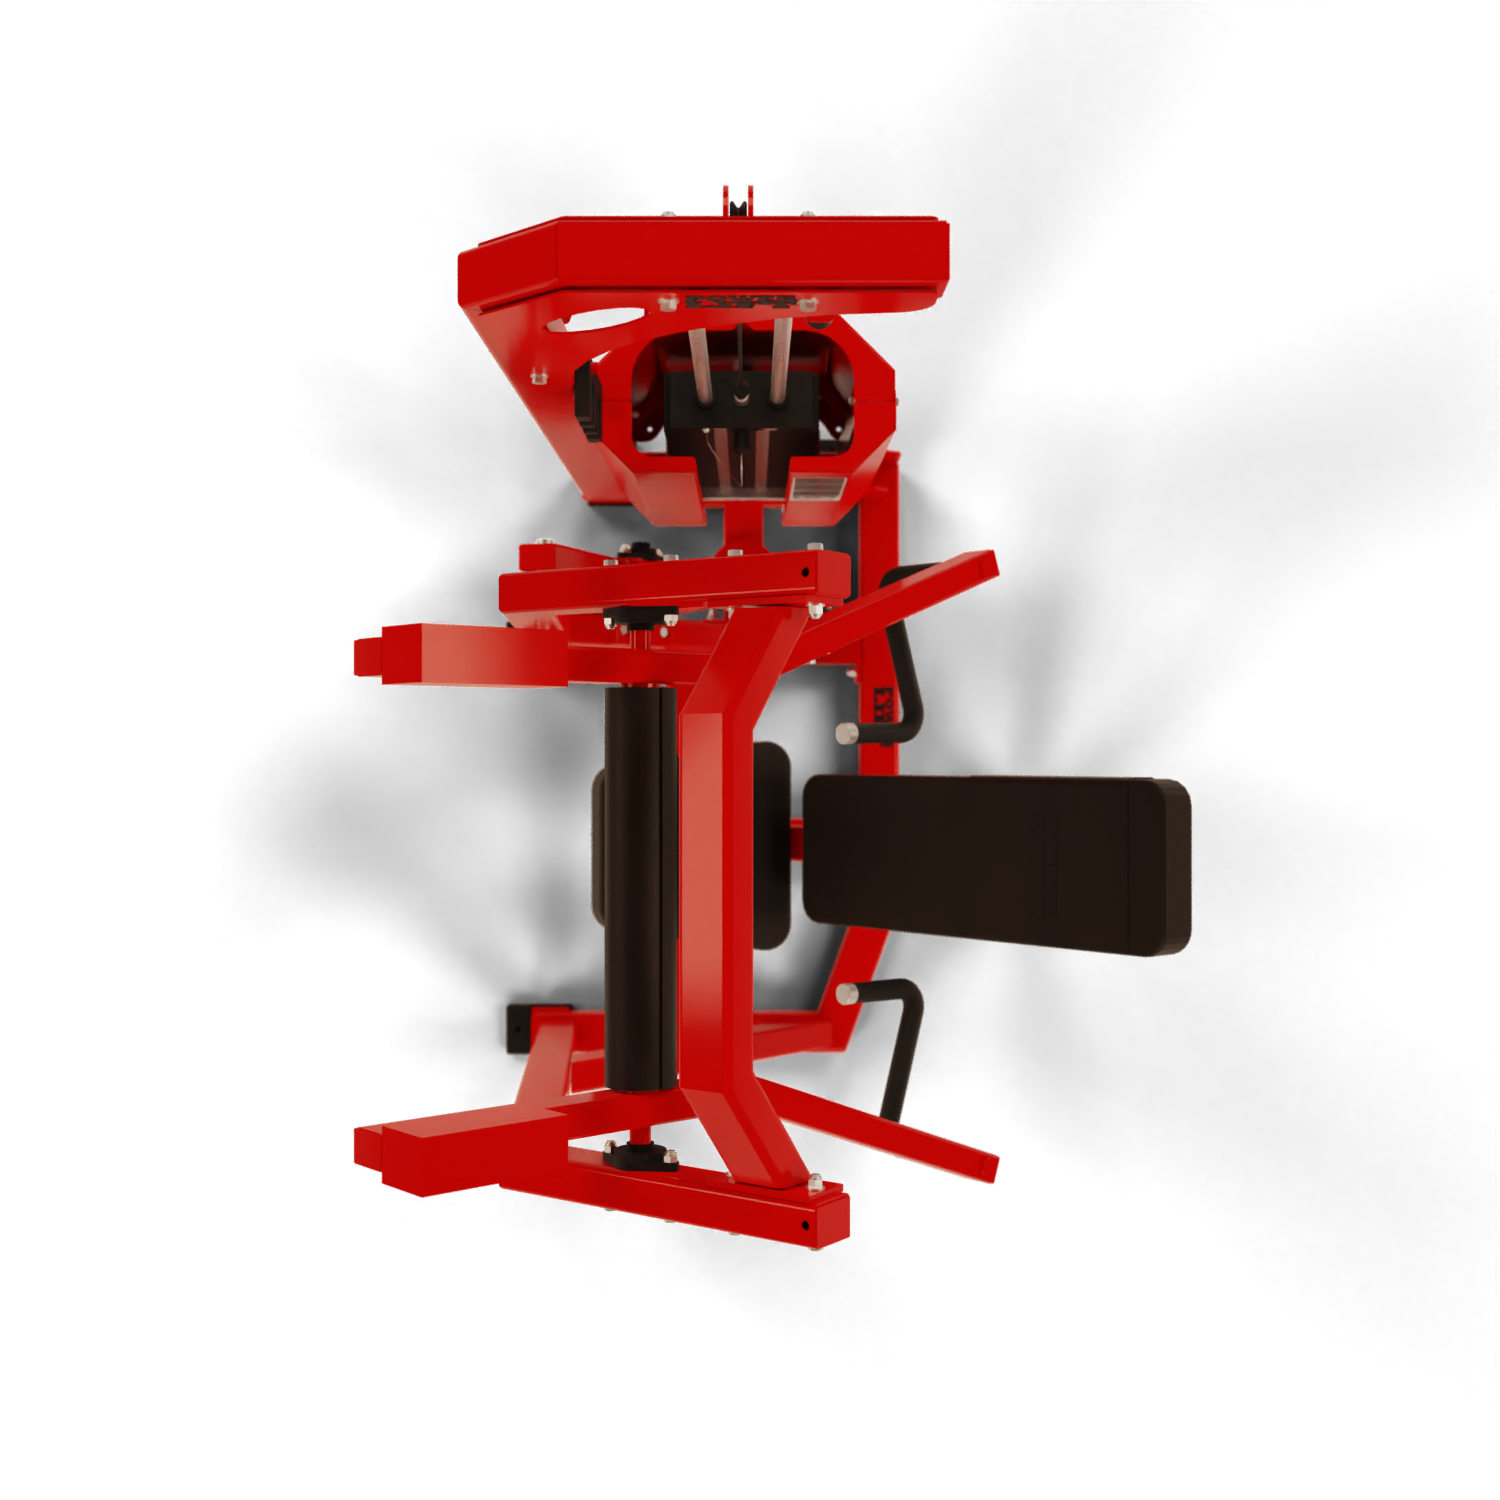 P1XX Shoulder Press Machine  Gym Steel - Professional Gym Equipment